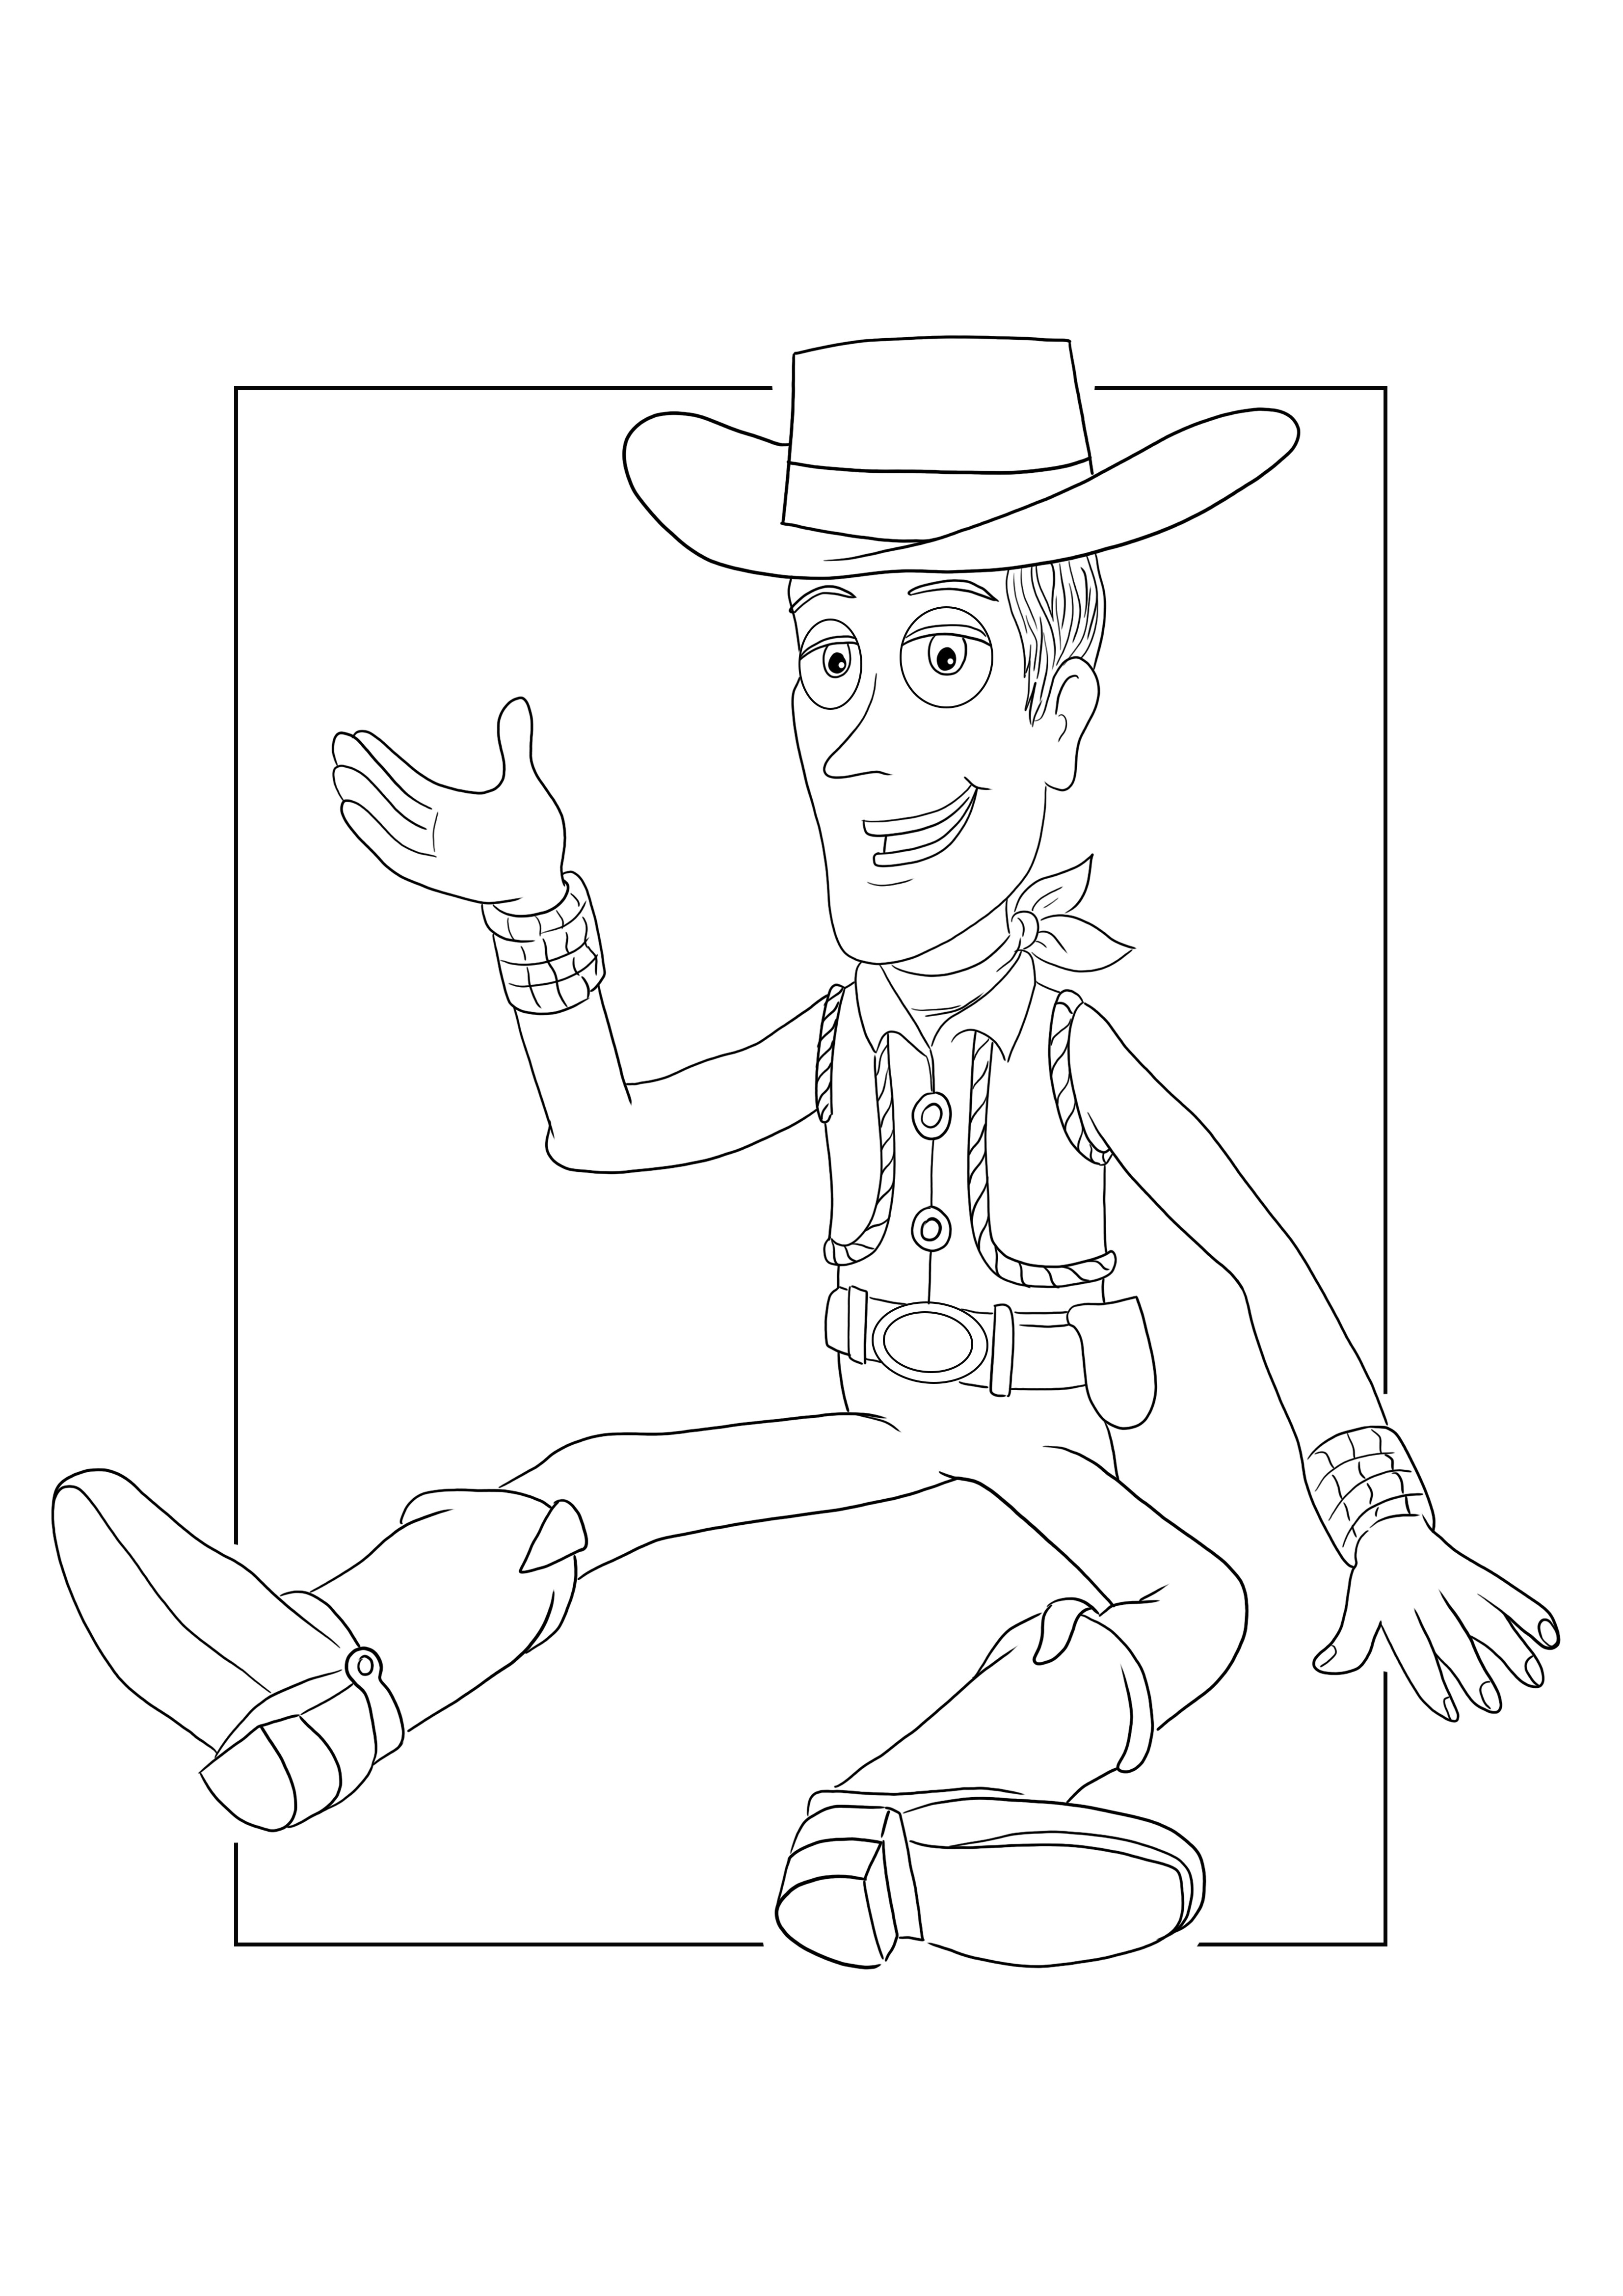 Sheriff Woody colorează și imprimă gratuit foi pentru copii